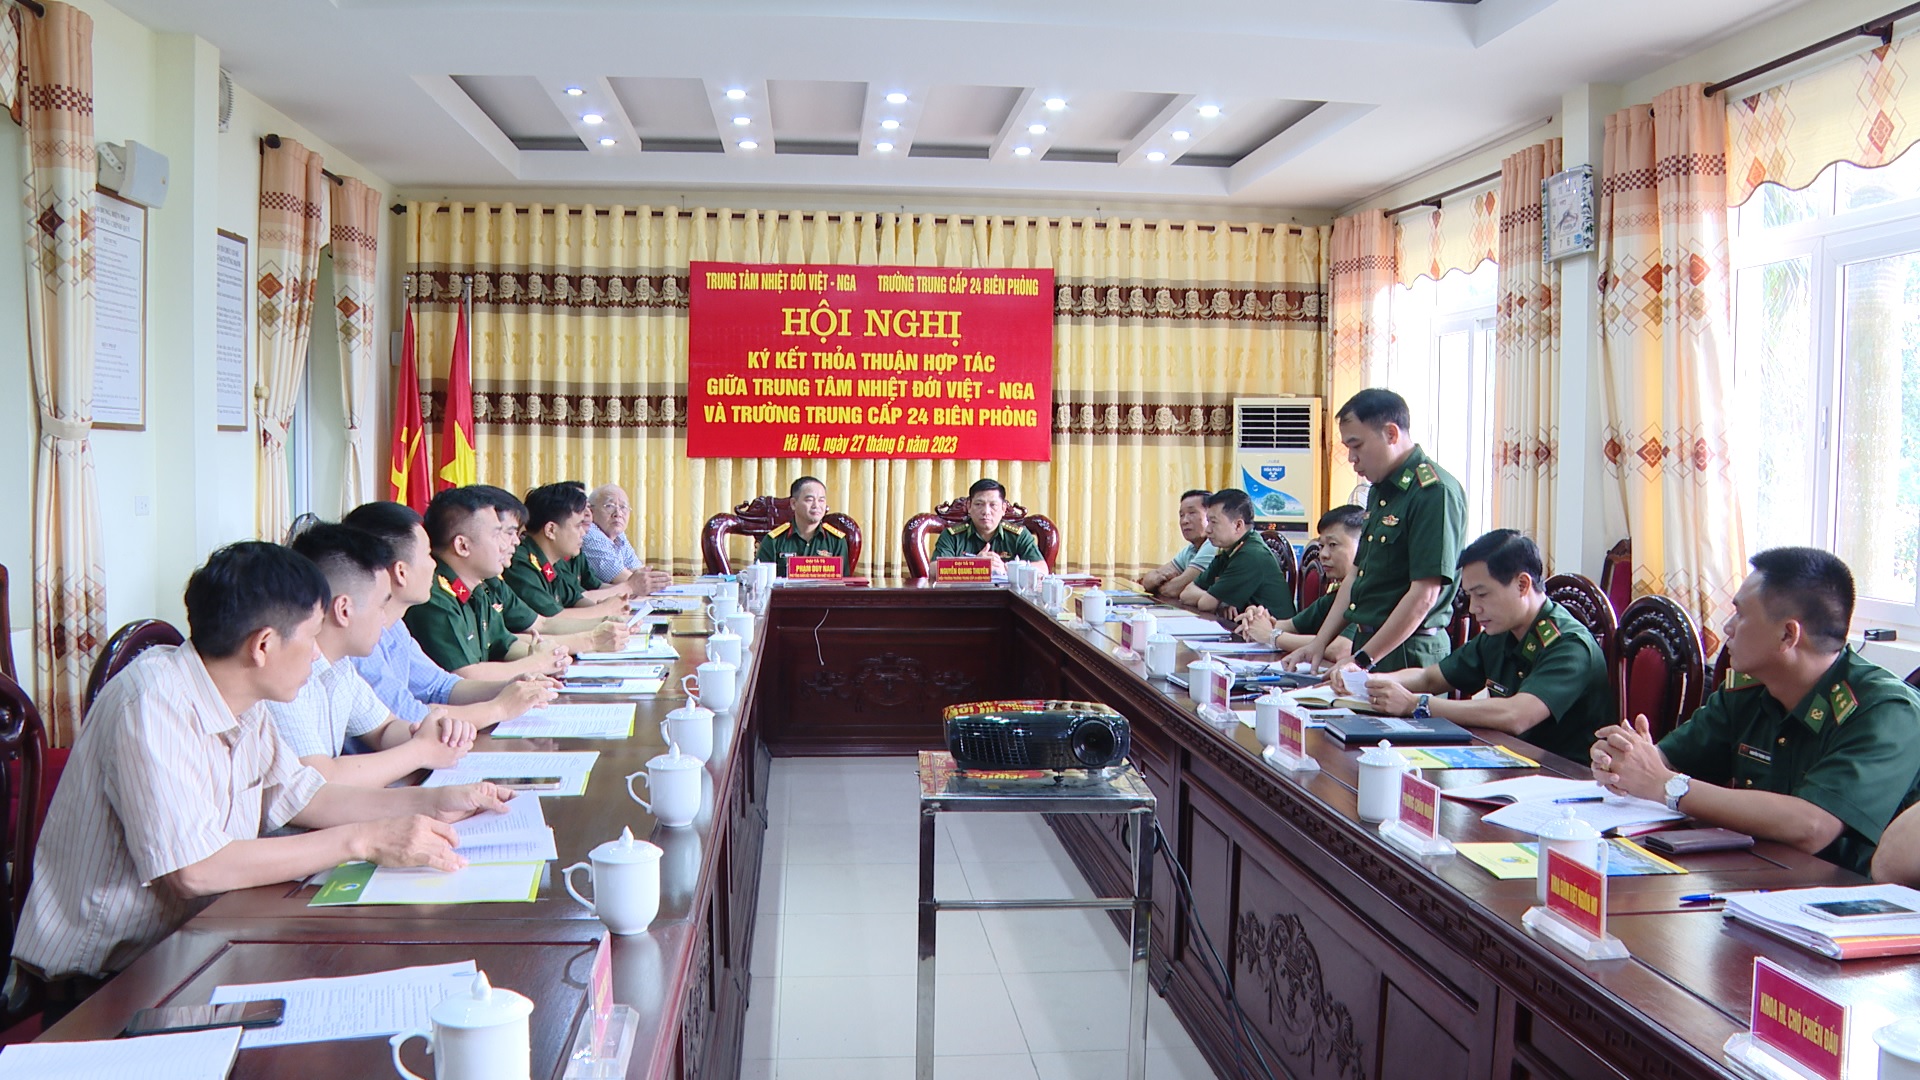 Trung tâm Nhiệt đới Việt - Nga và Trường Trung cấp 24 Biên phòng ký kết biên bản ghi nhớ hợp tác